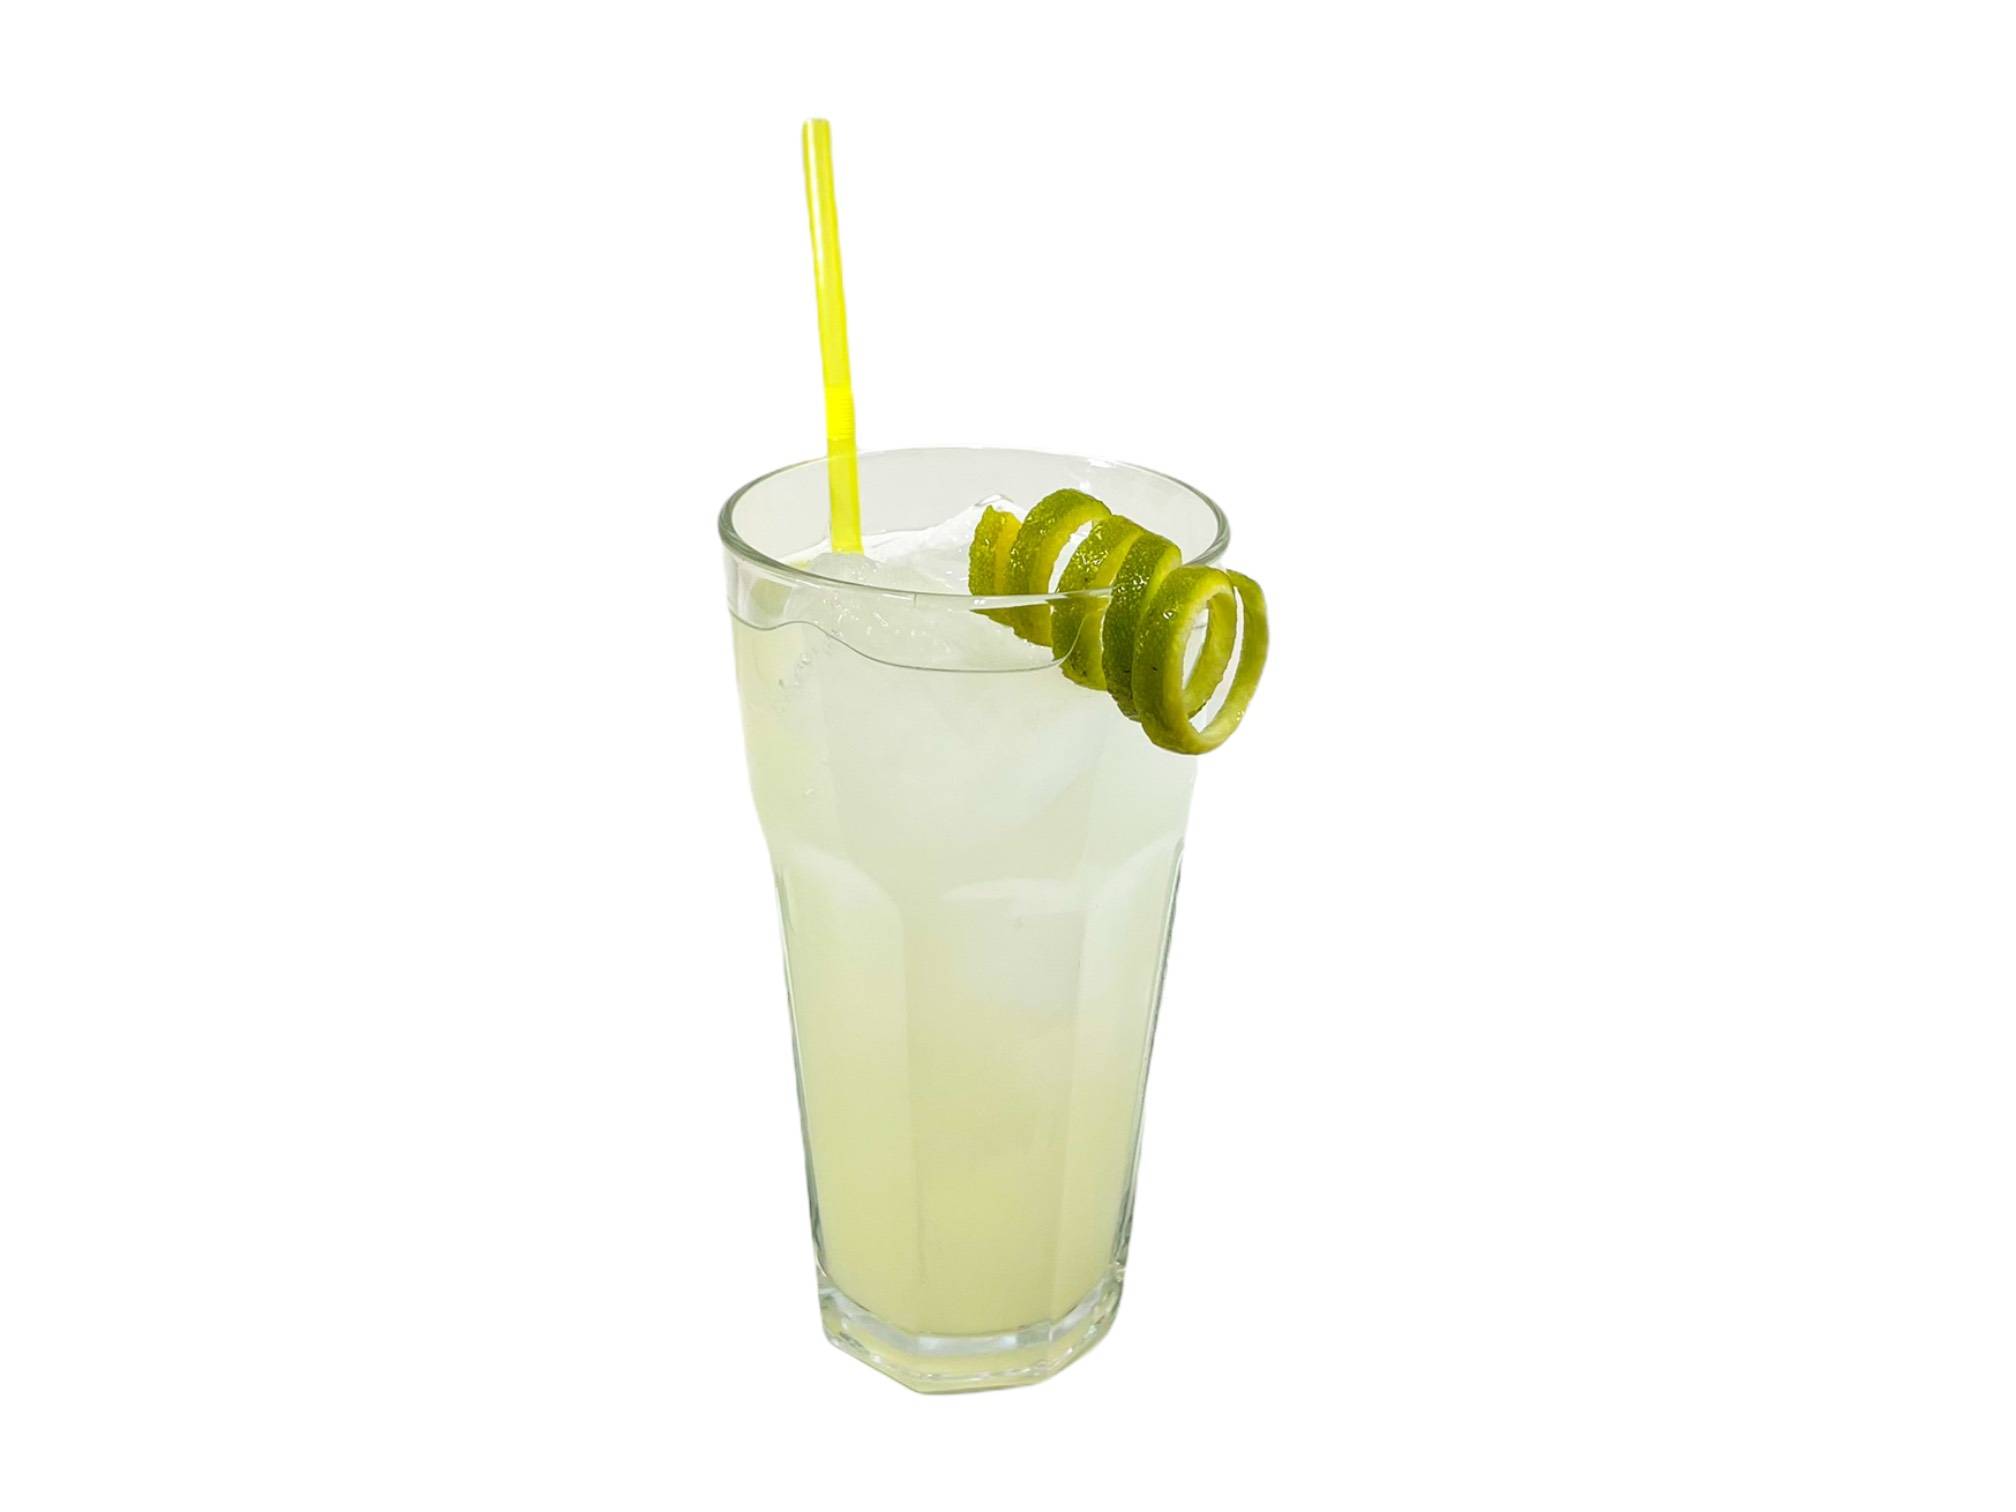  Natural lemonade